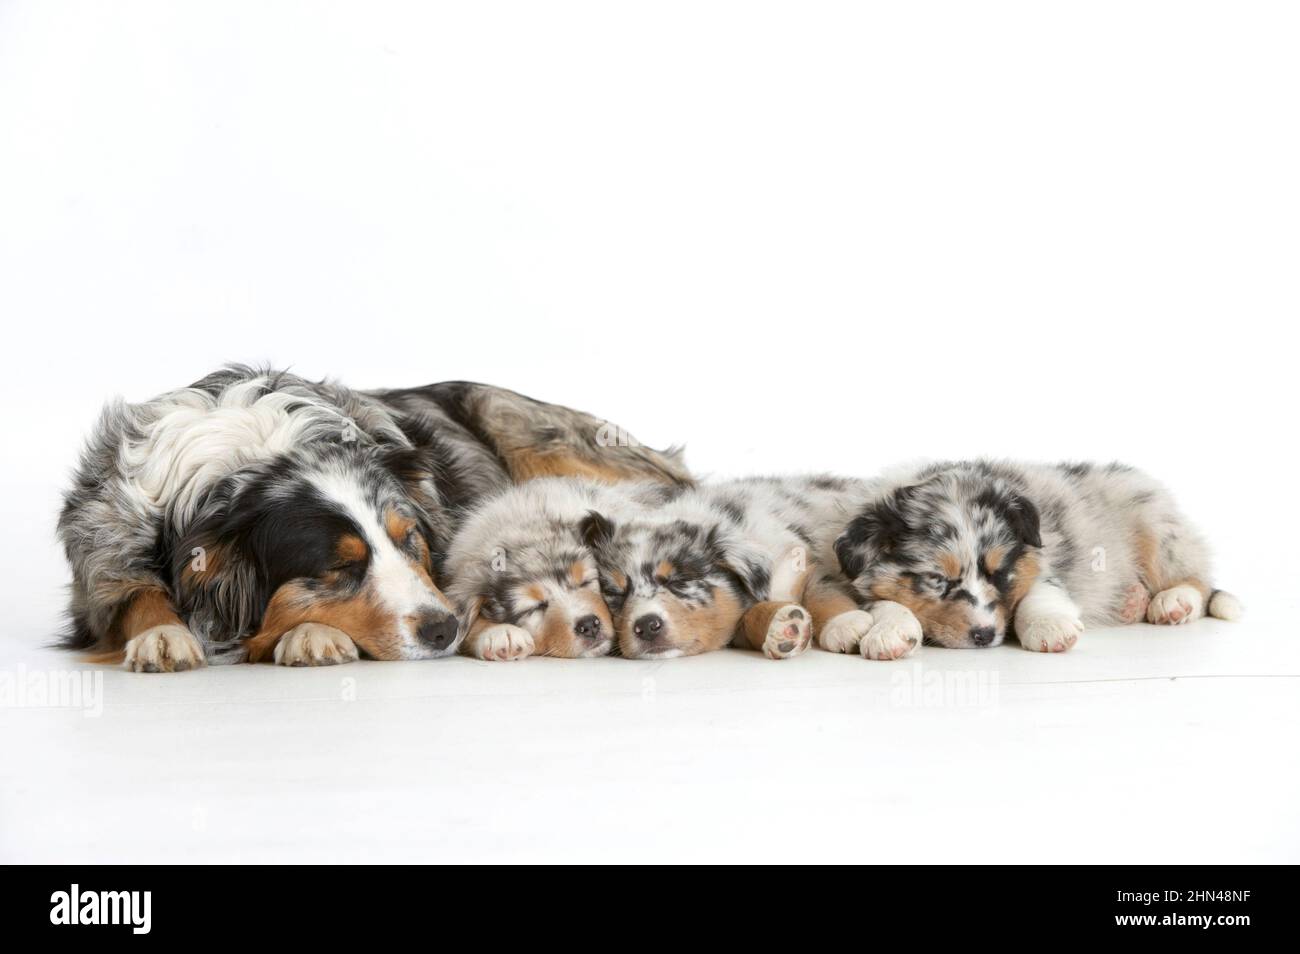 Pastore Australiano. Madre addormentata con tre cuccioli addormentati. Foto studio su sfondo bianco. Germania Foto Stock